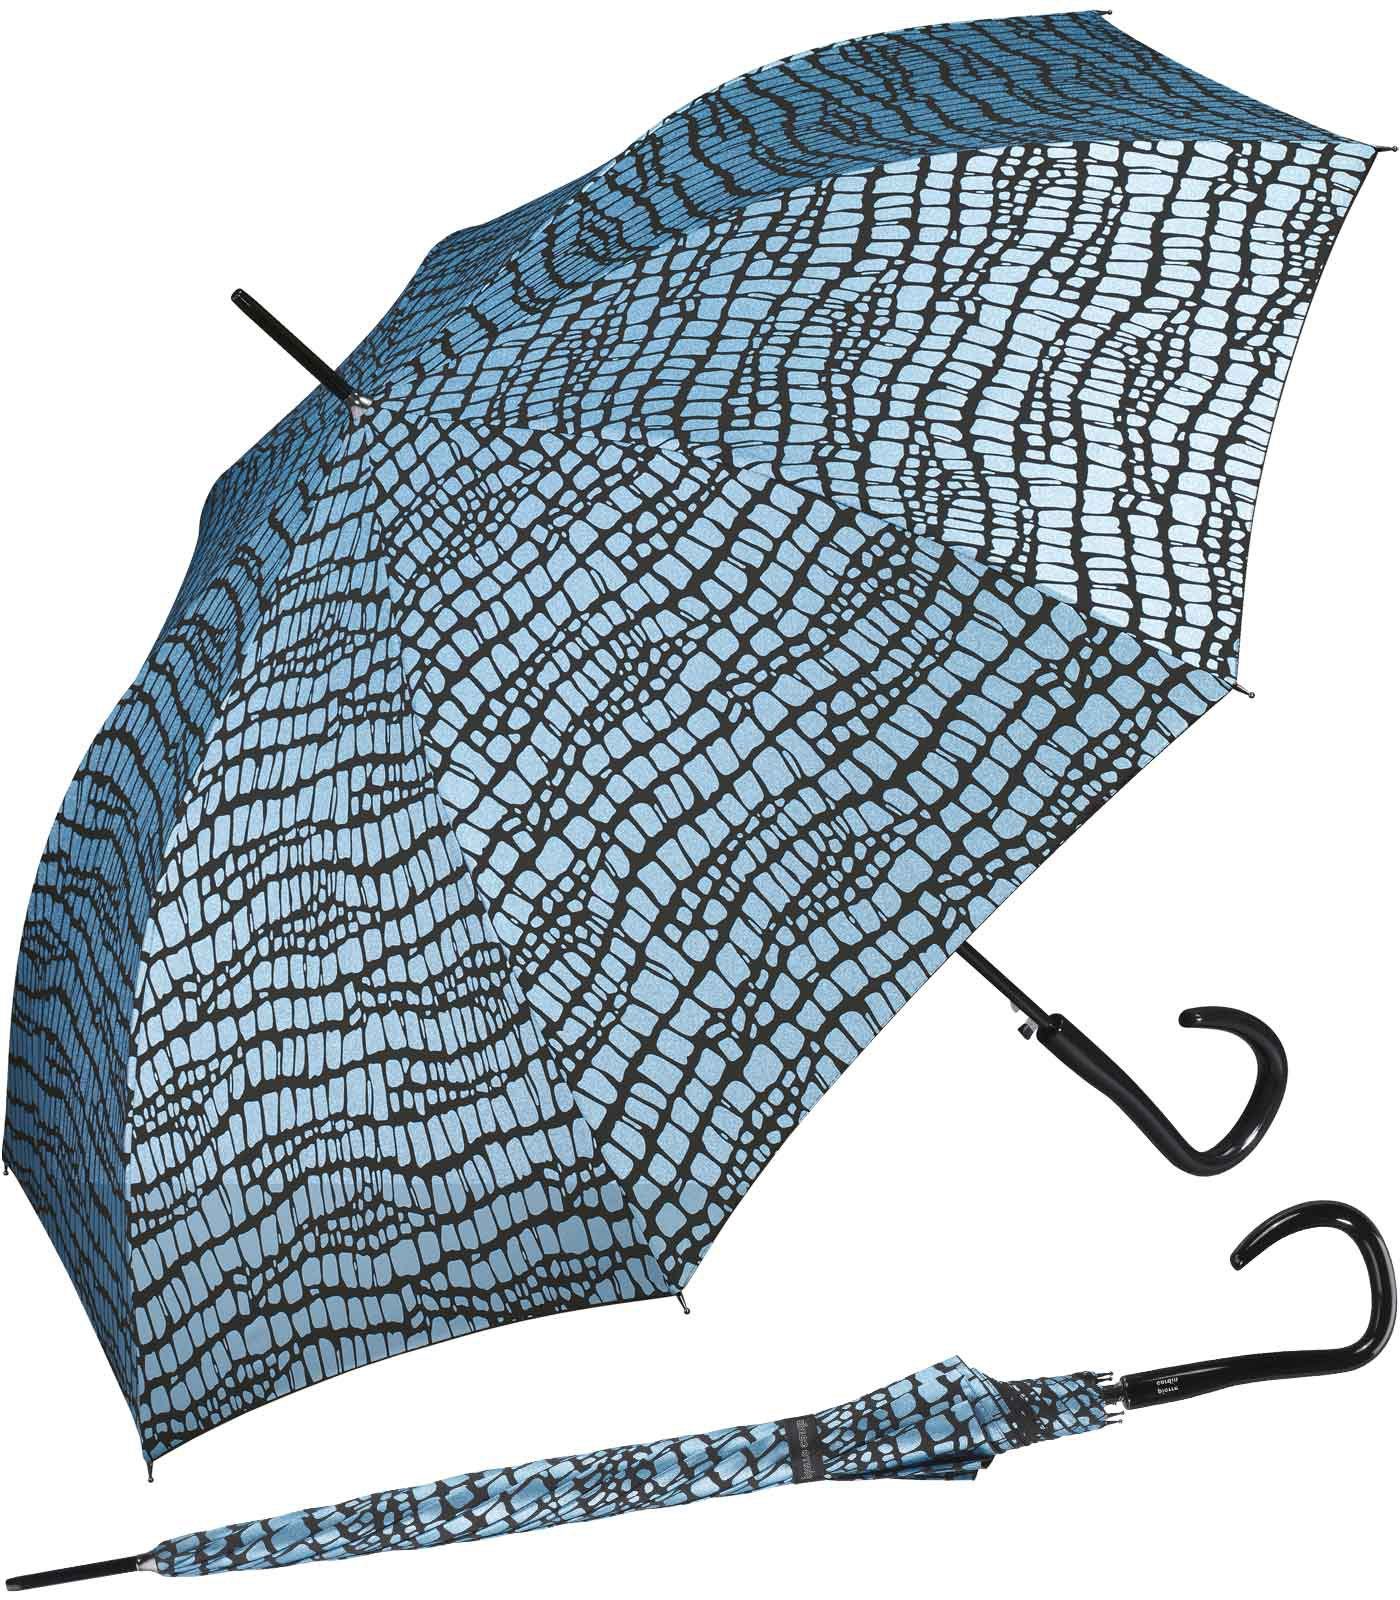 Pierre Cardin Langregenschirm großer Damen-Regenschirm mit Auf-Automatik, Krokodil-Optik für den Regenschirm blau-schwarz